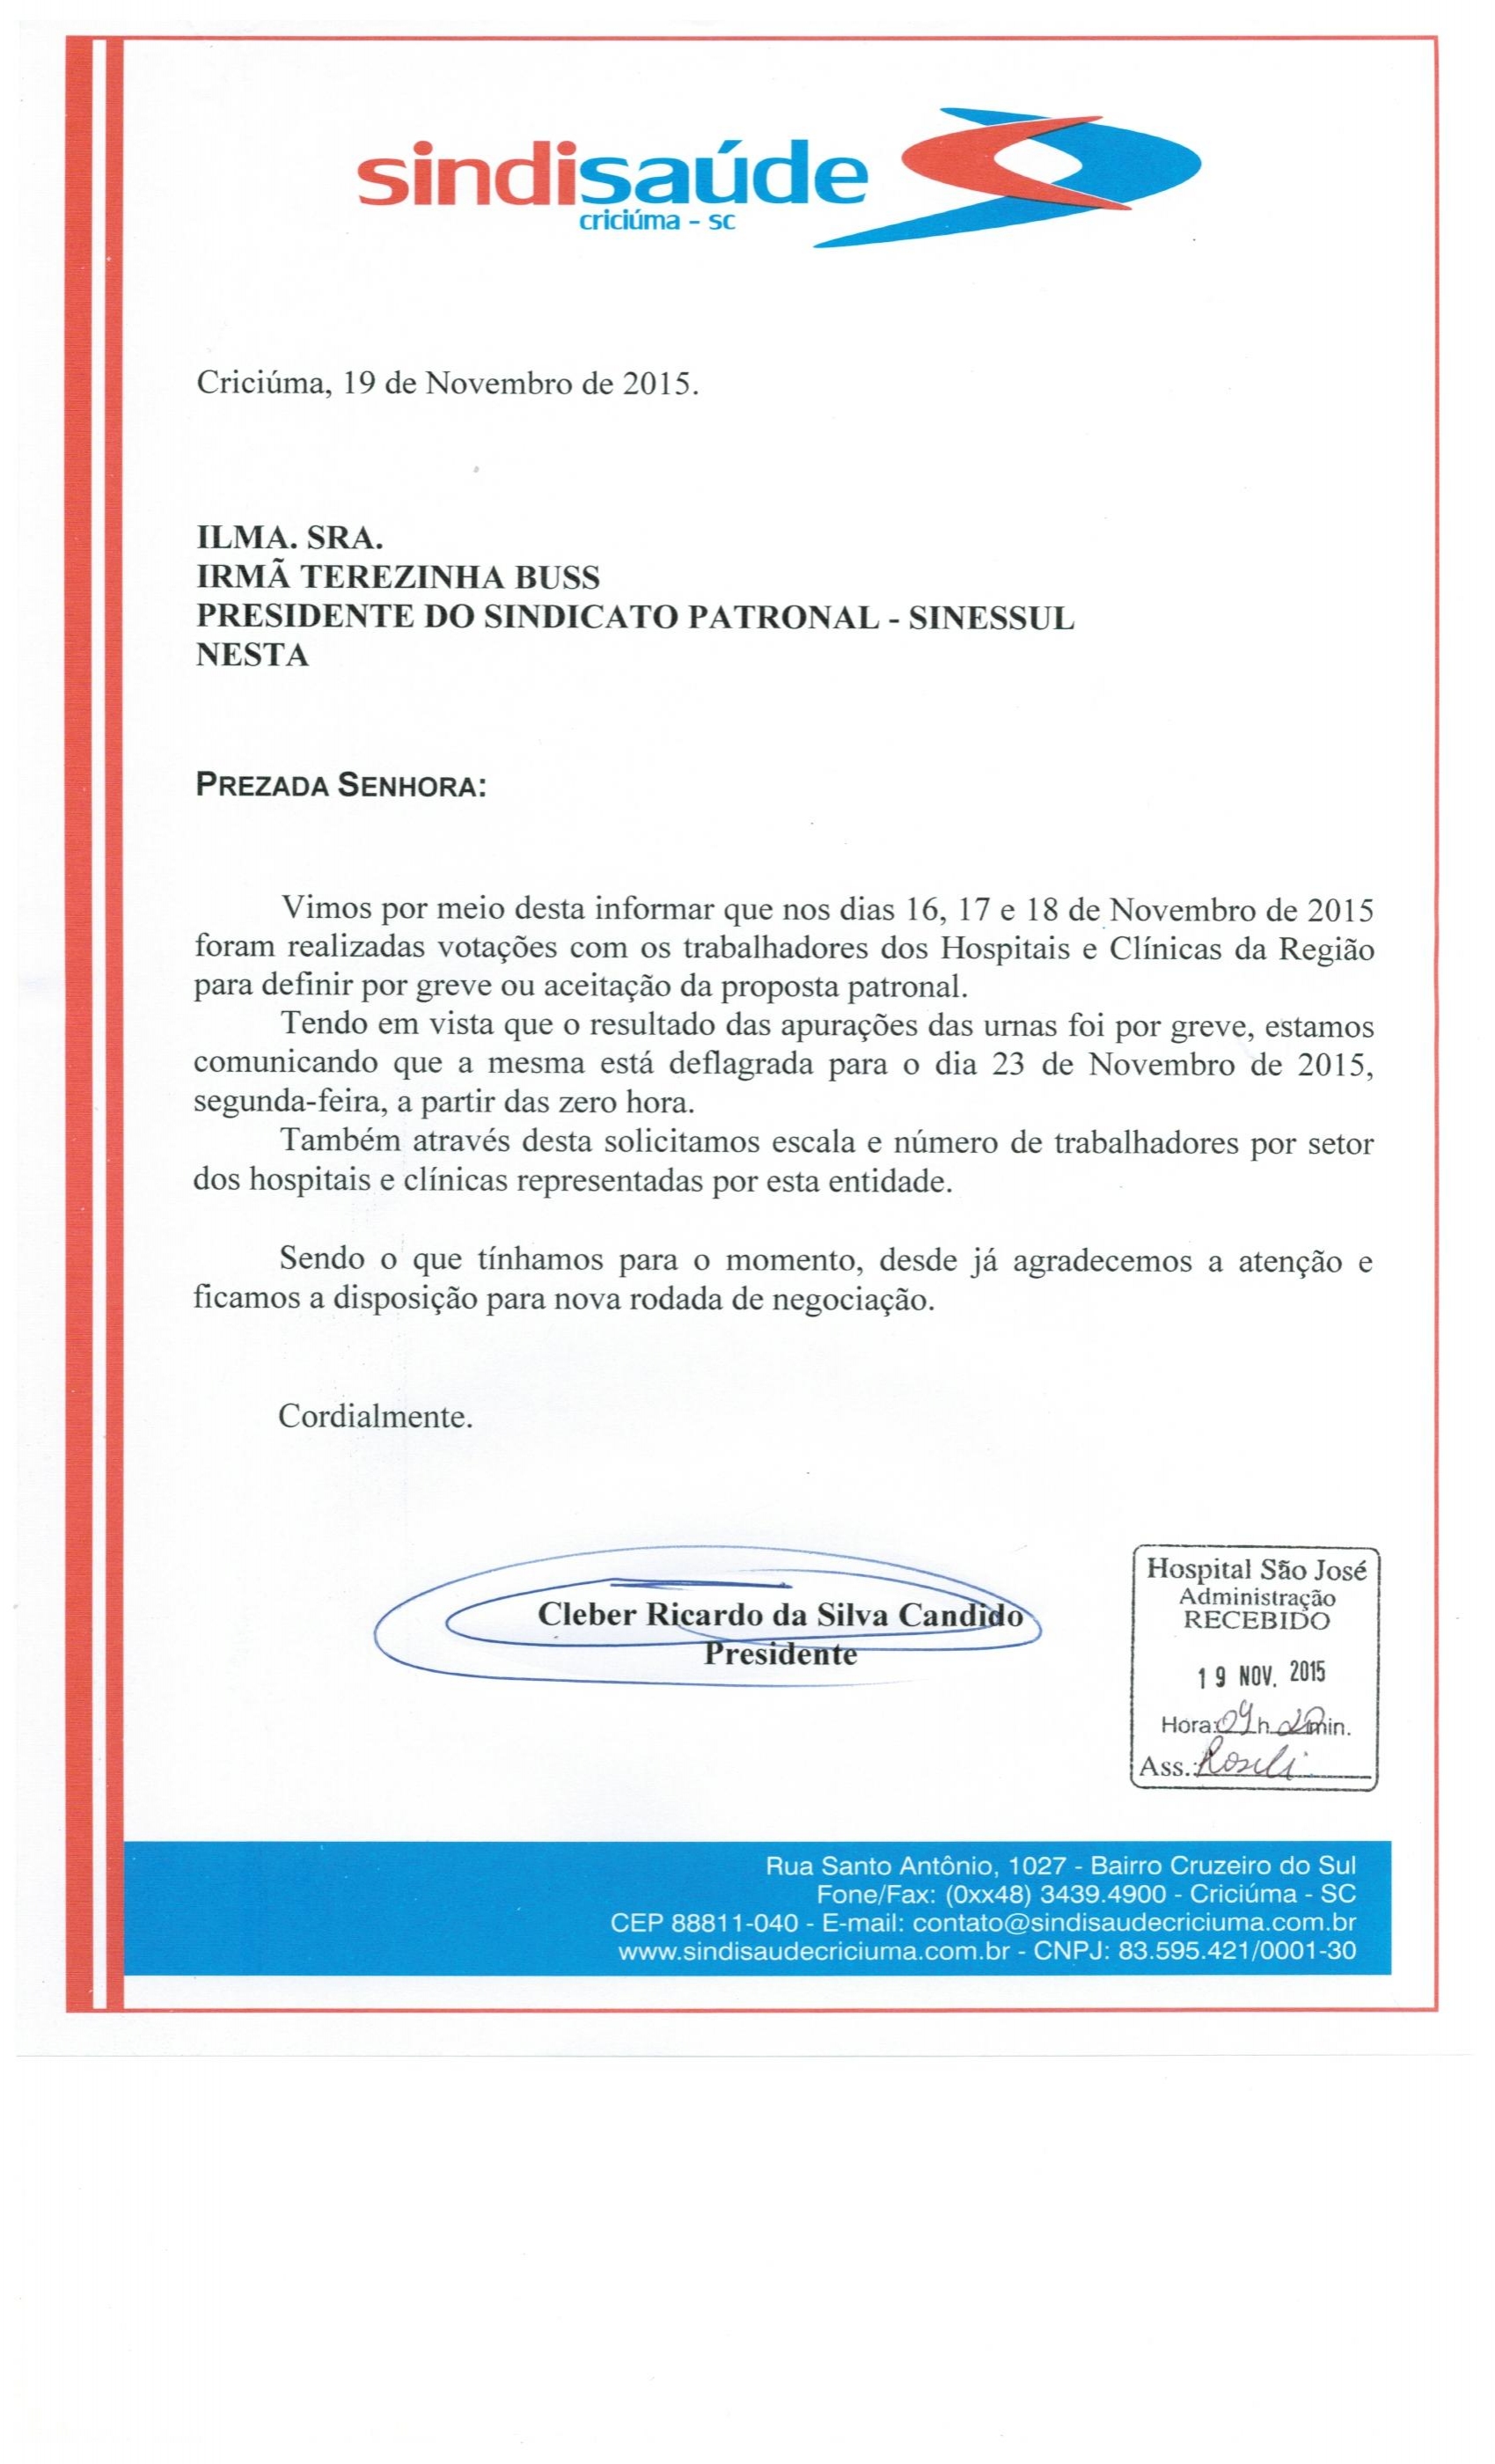 OFICIO COMUNICAÇÃO DE GREVE A PARTIR DE SEGUNDA-FEIRA DIA 23 DE OUTUBRO DE 2015